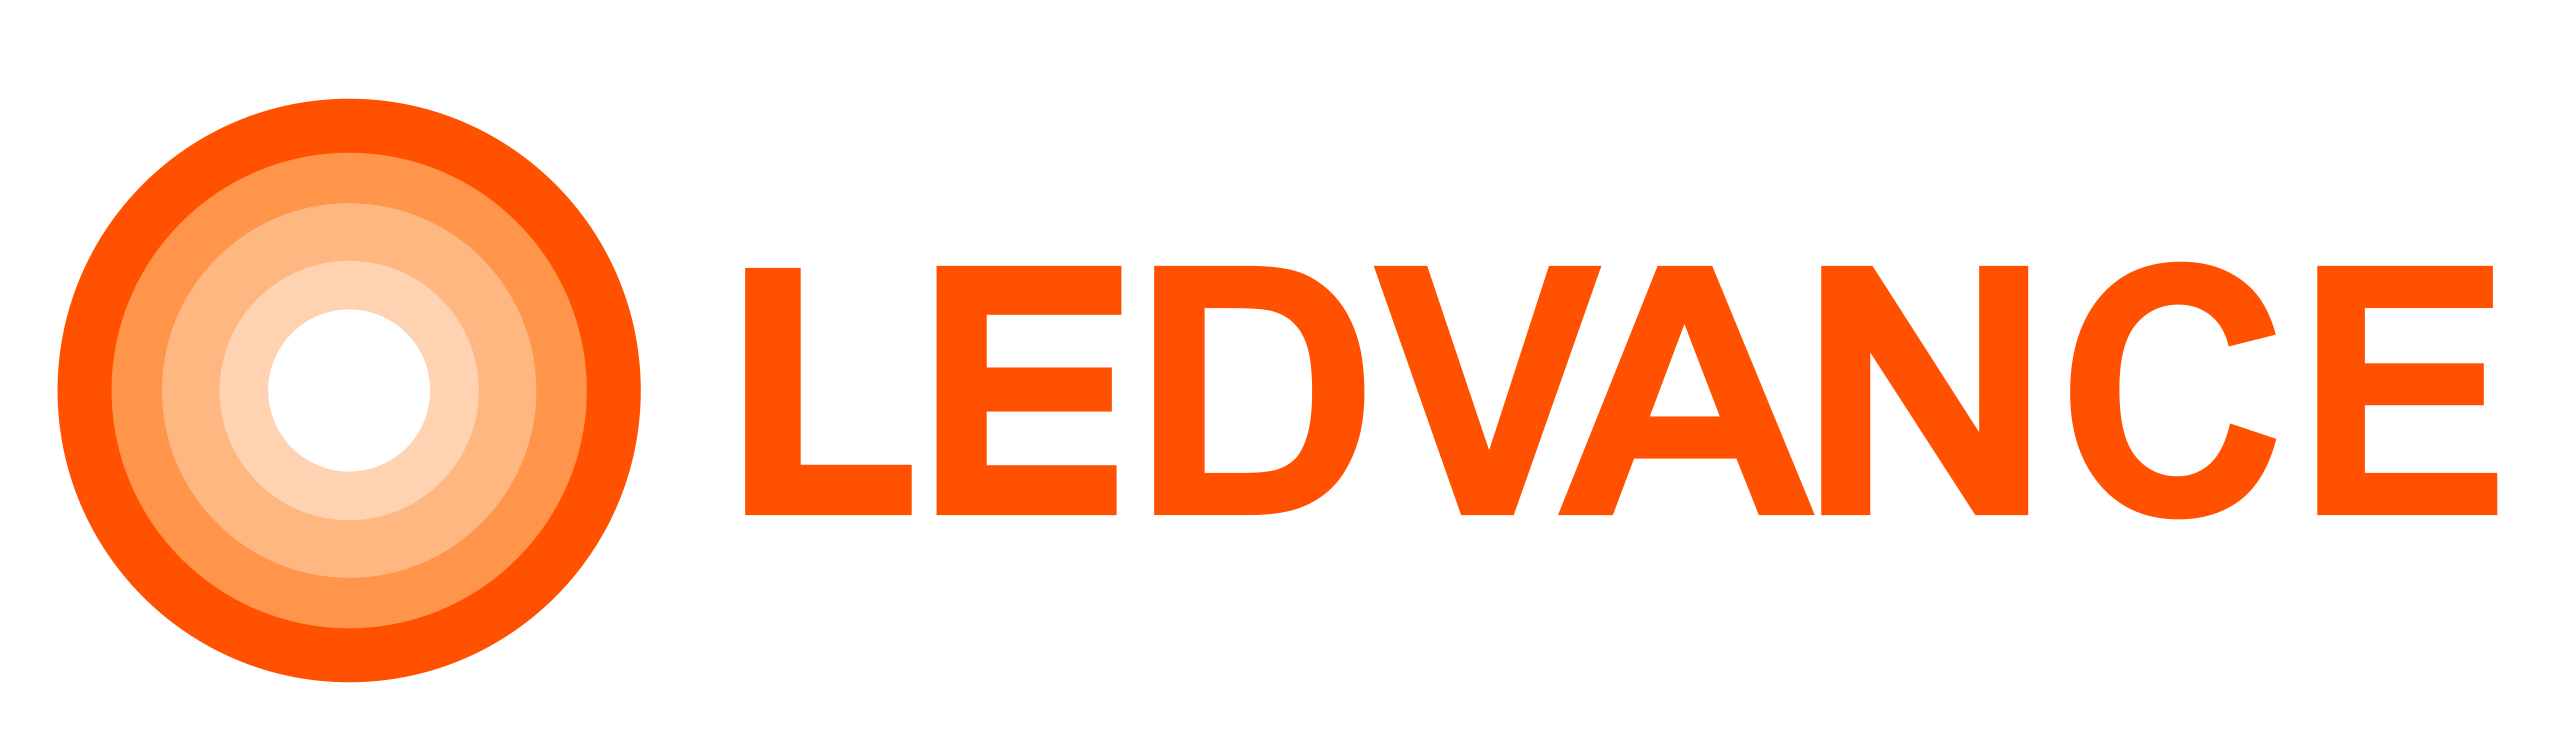 2560px-Ledvance_logo.svg